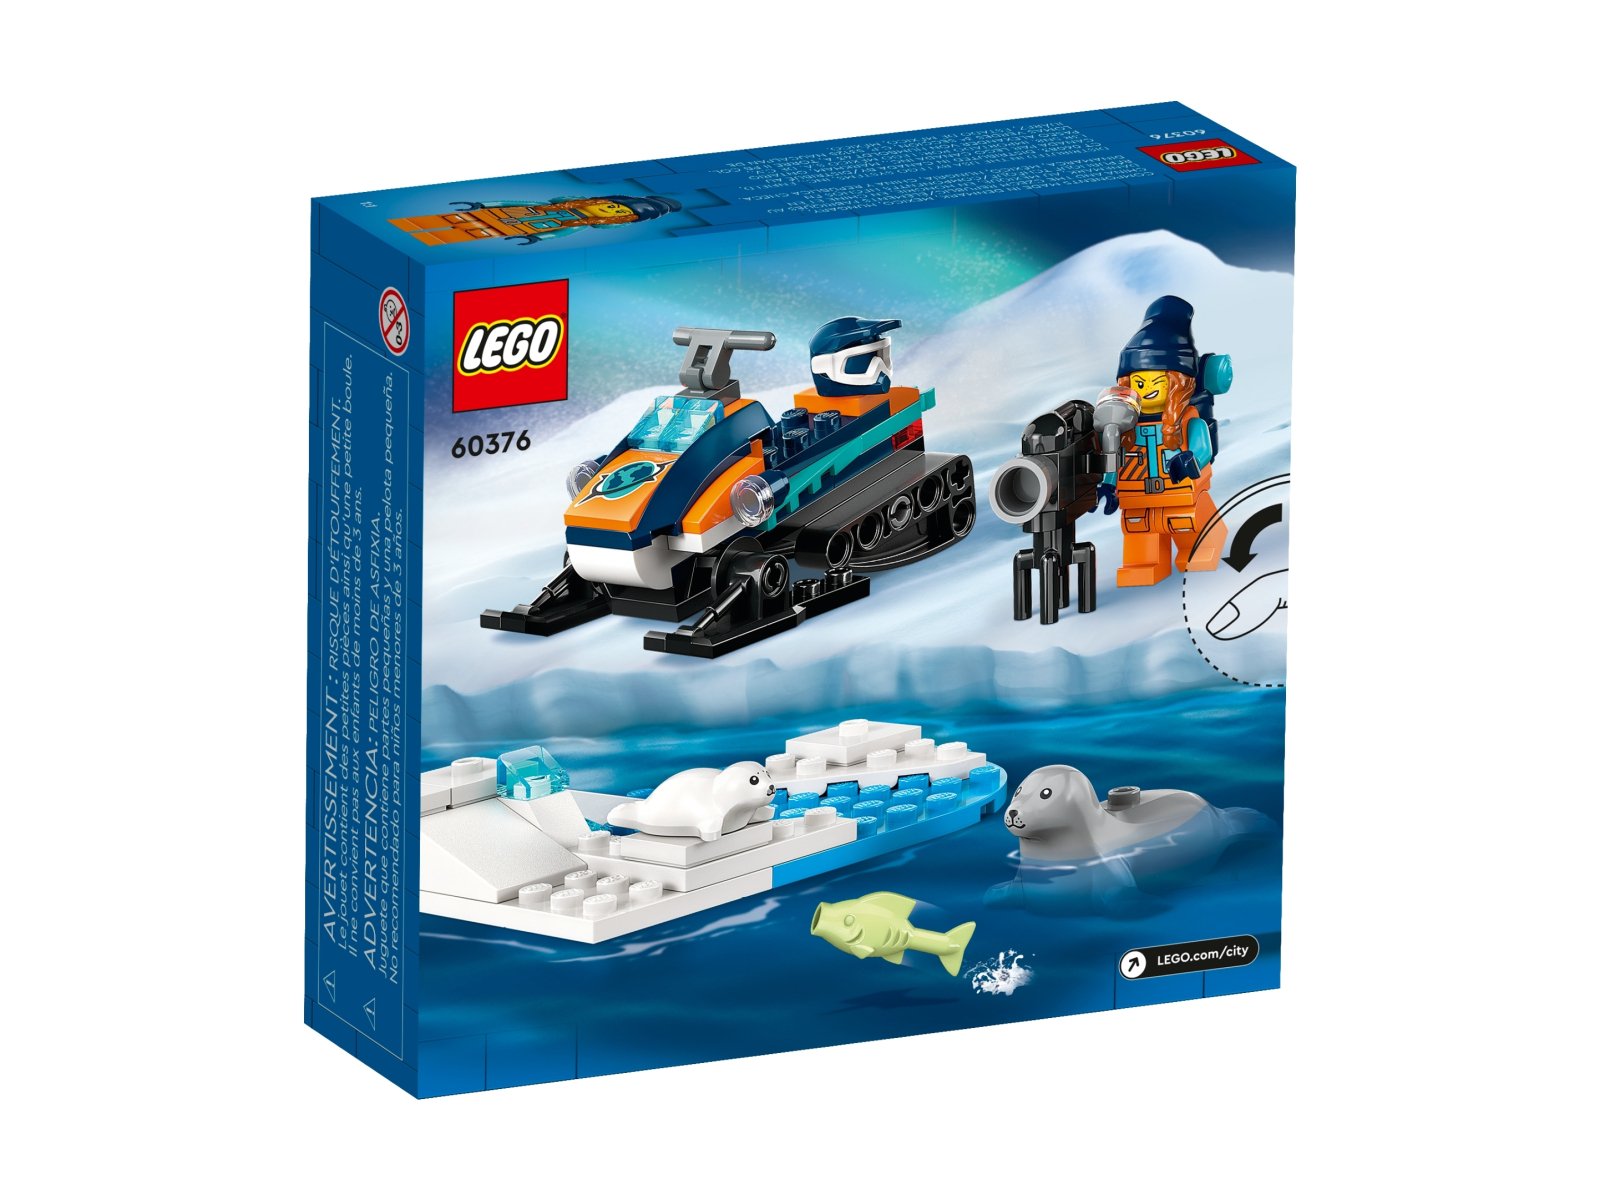 LEGO 60376 Skuter śnieżny badacza Arktyki